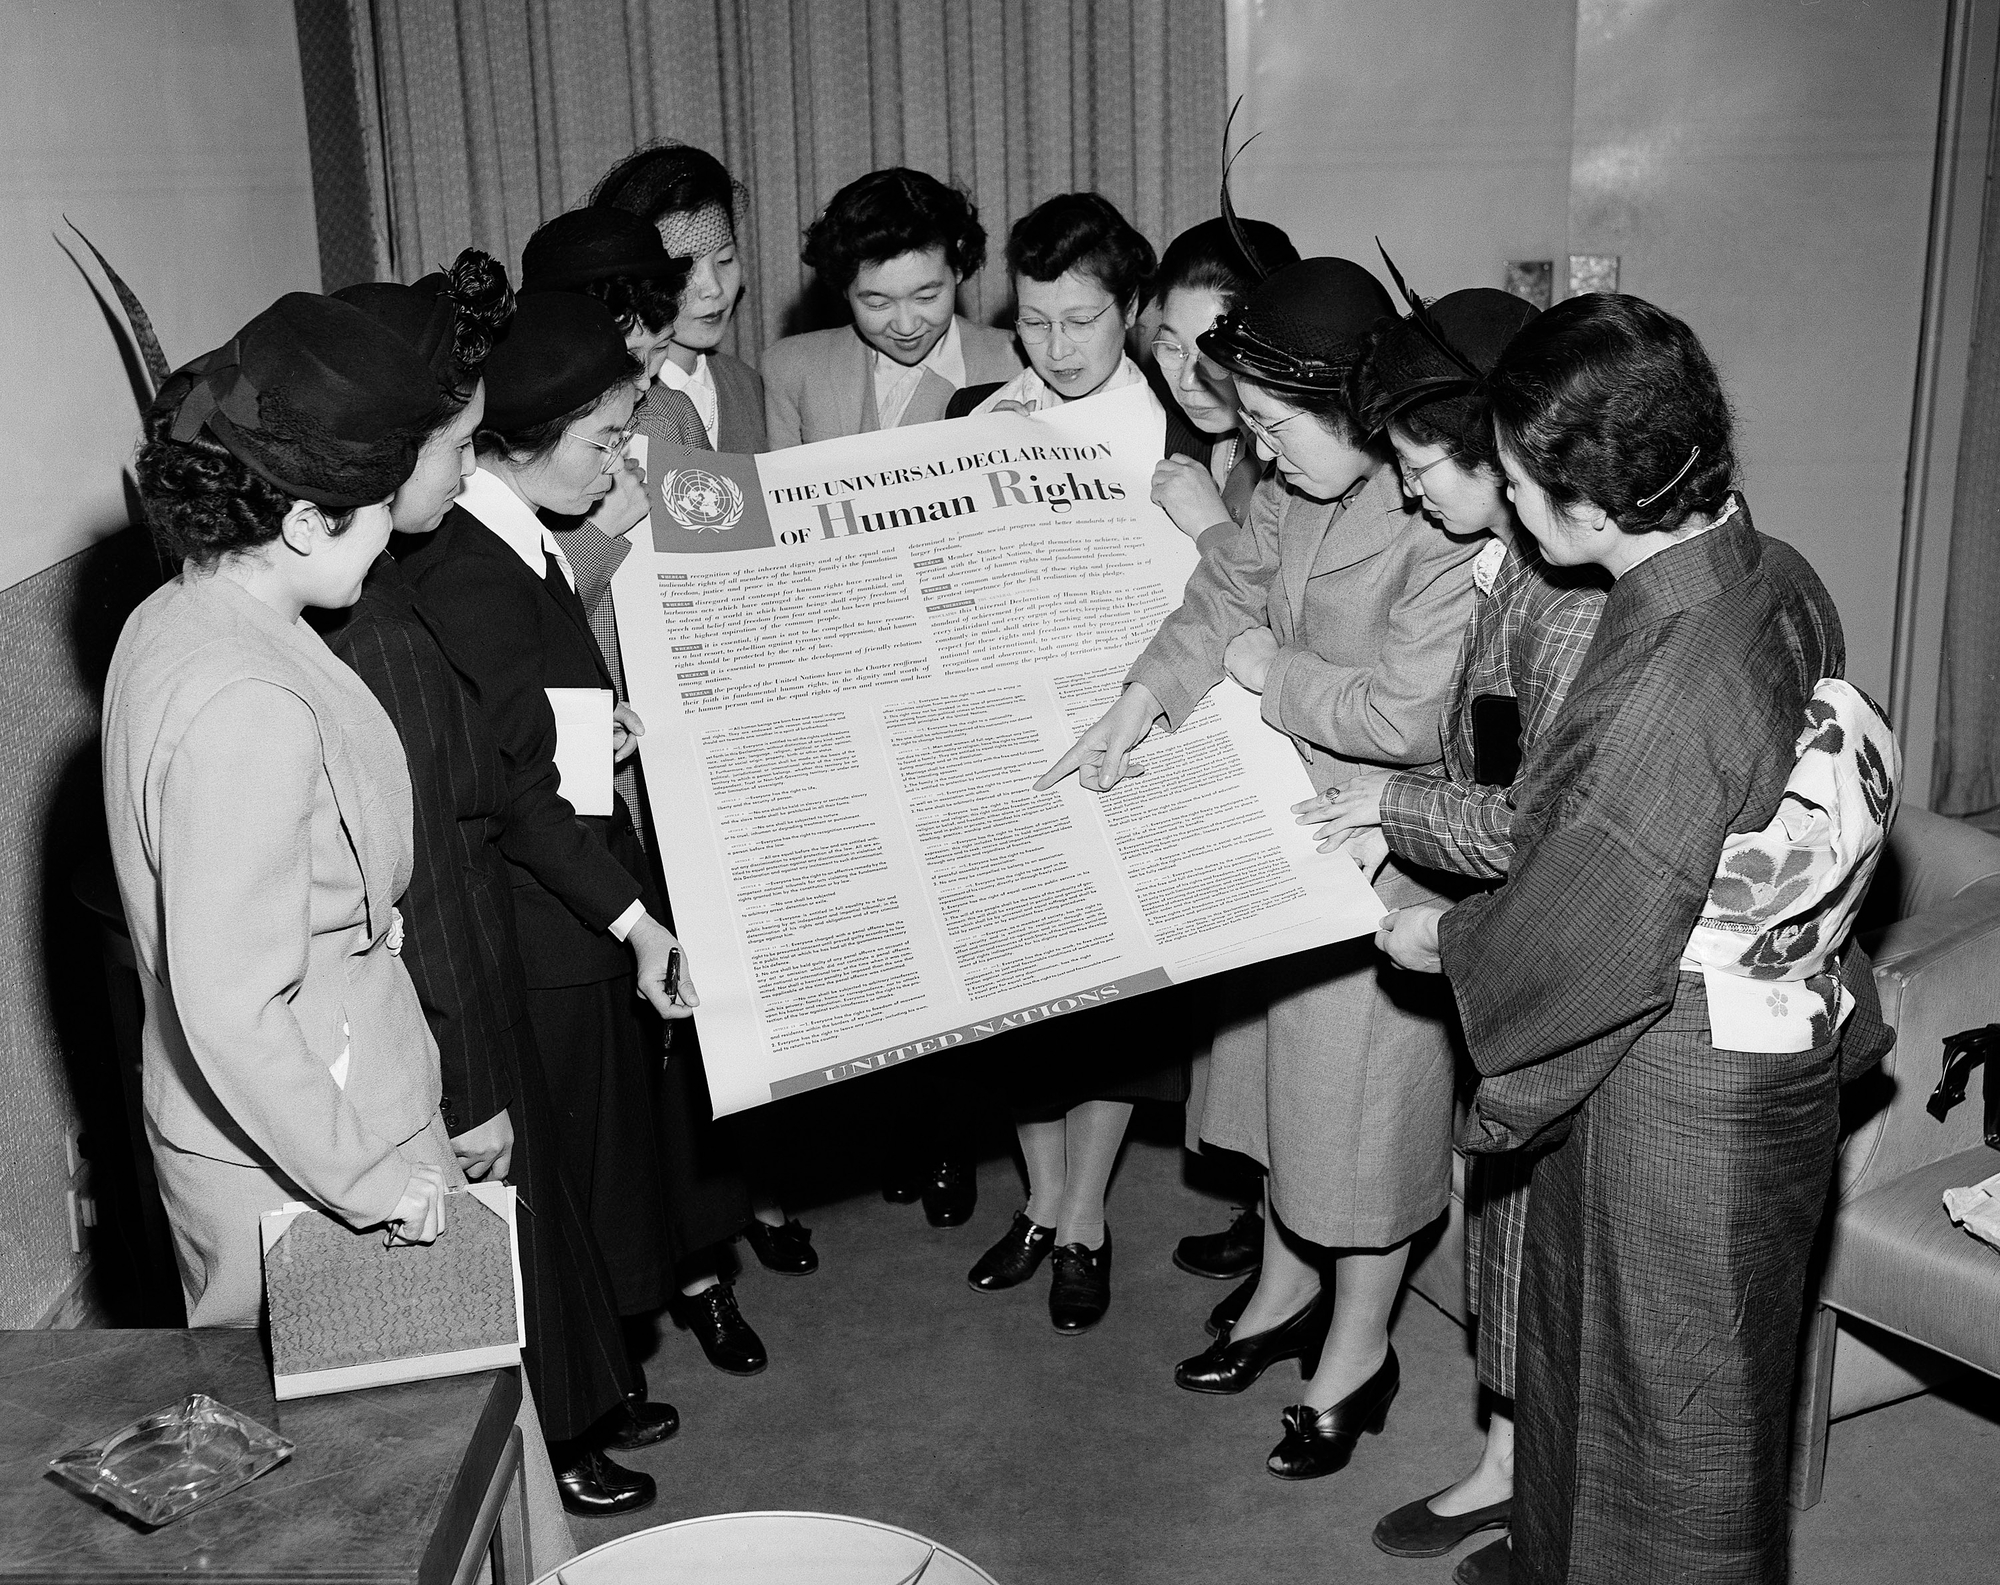 un gruppo di donne è riunito attorno a un poster che riporta il testo della dichiarazione universale dei diritti umani